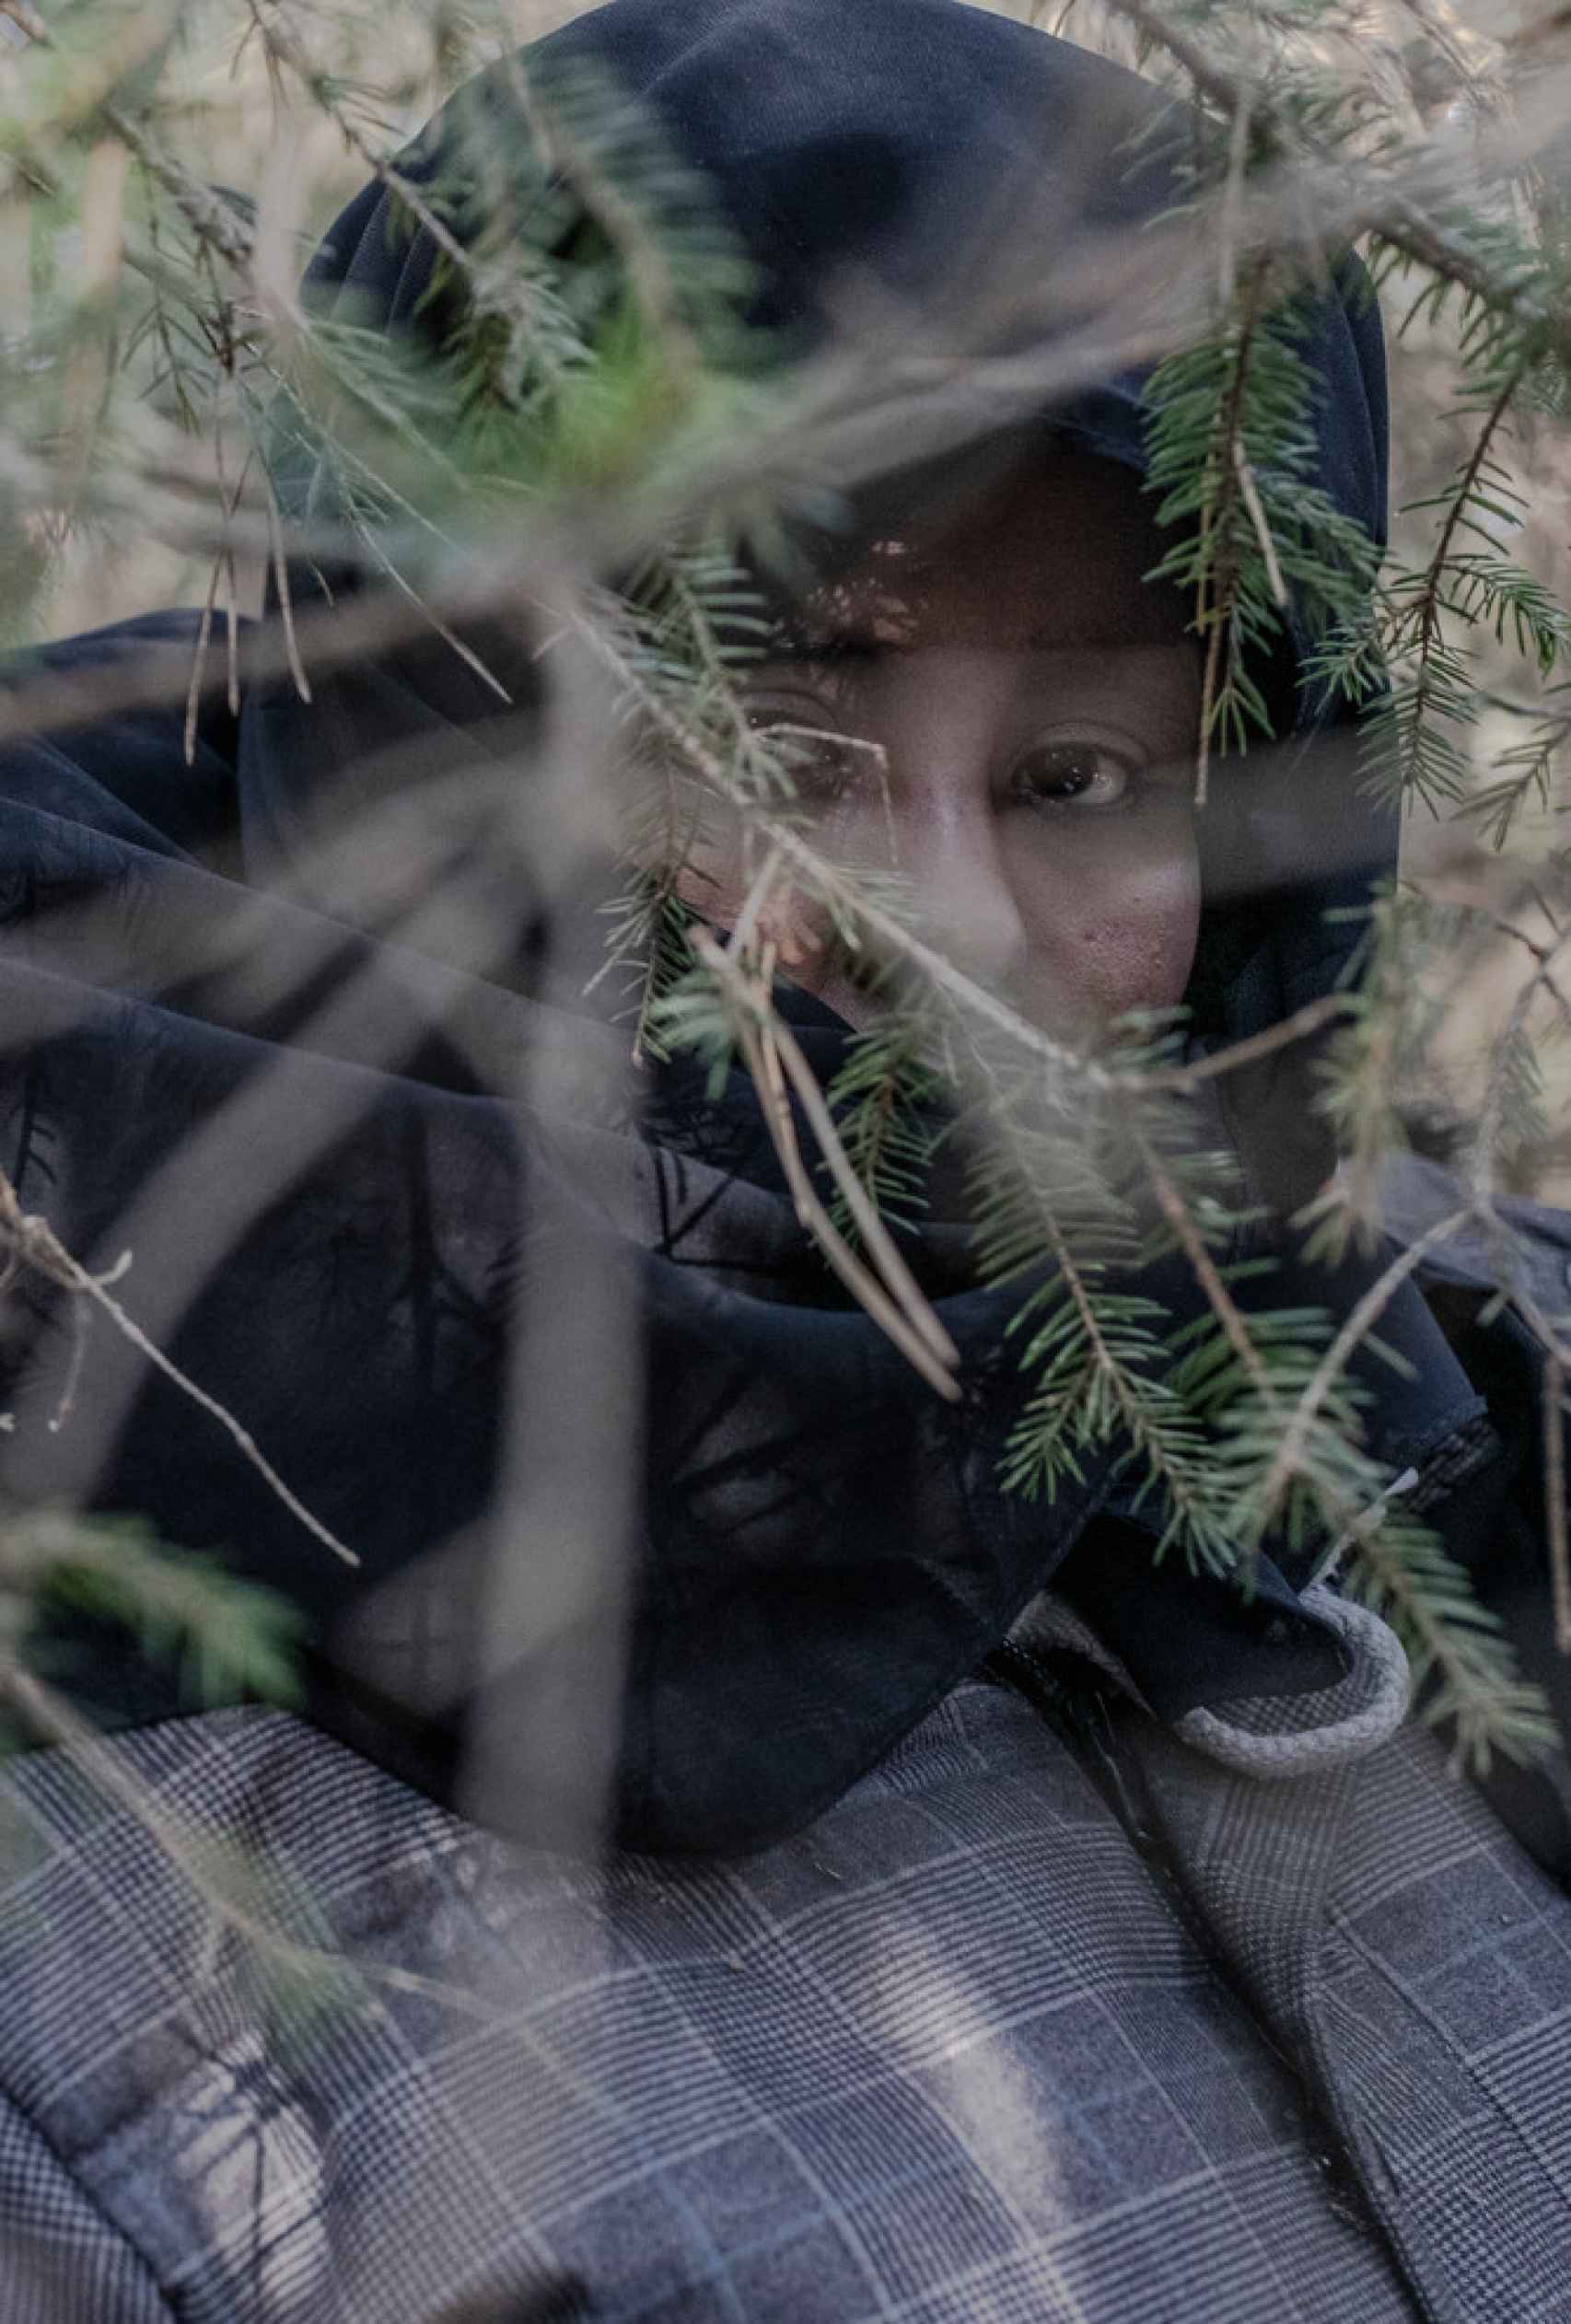 Una mujer somalí que estuvo 3 semanas viviendo en el bosque intentando, fallidamente, cruzar la frontera entre  Polonia y Bielorrusia.